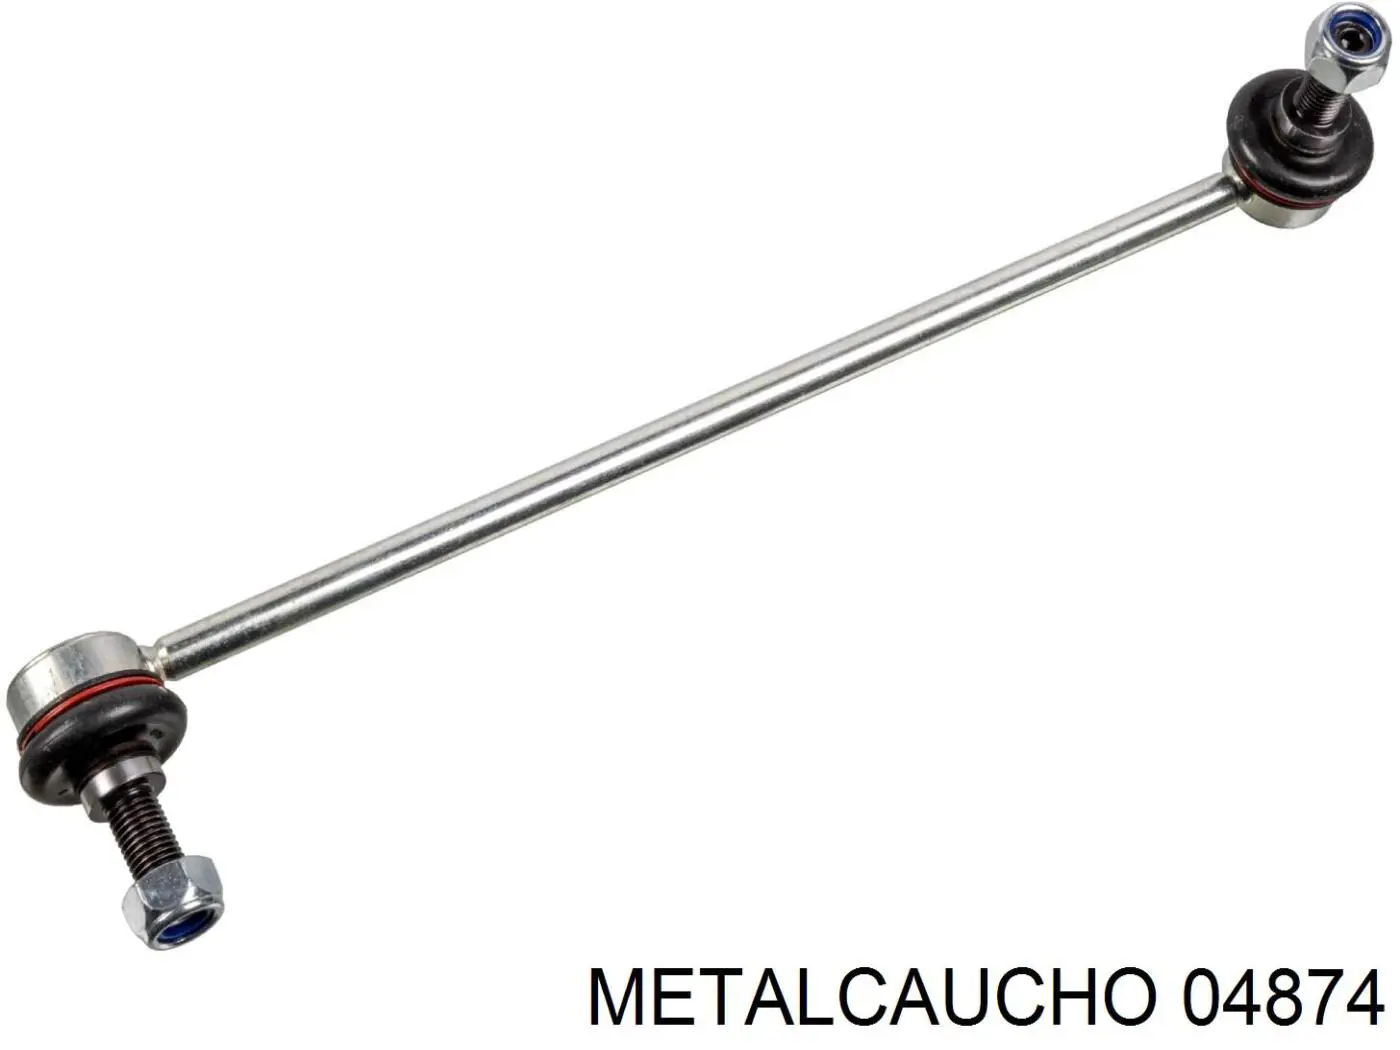 04874 Metalcaucho soporte de barra estabilizadora delantera